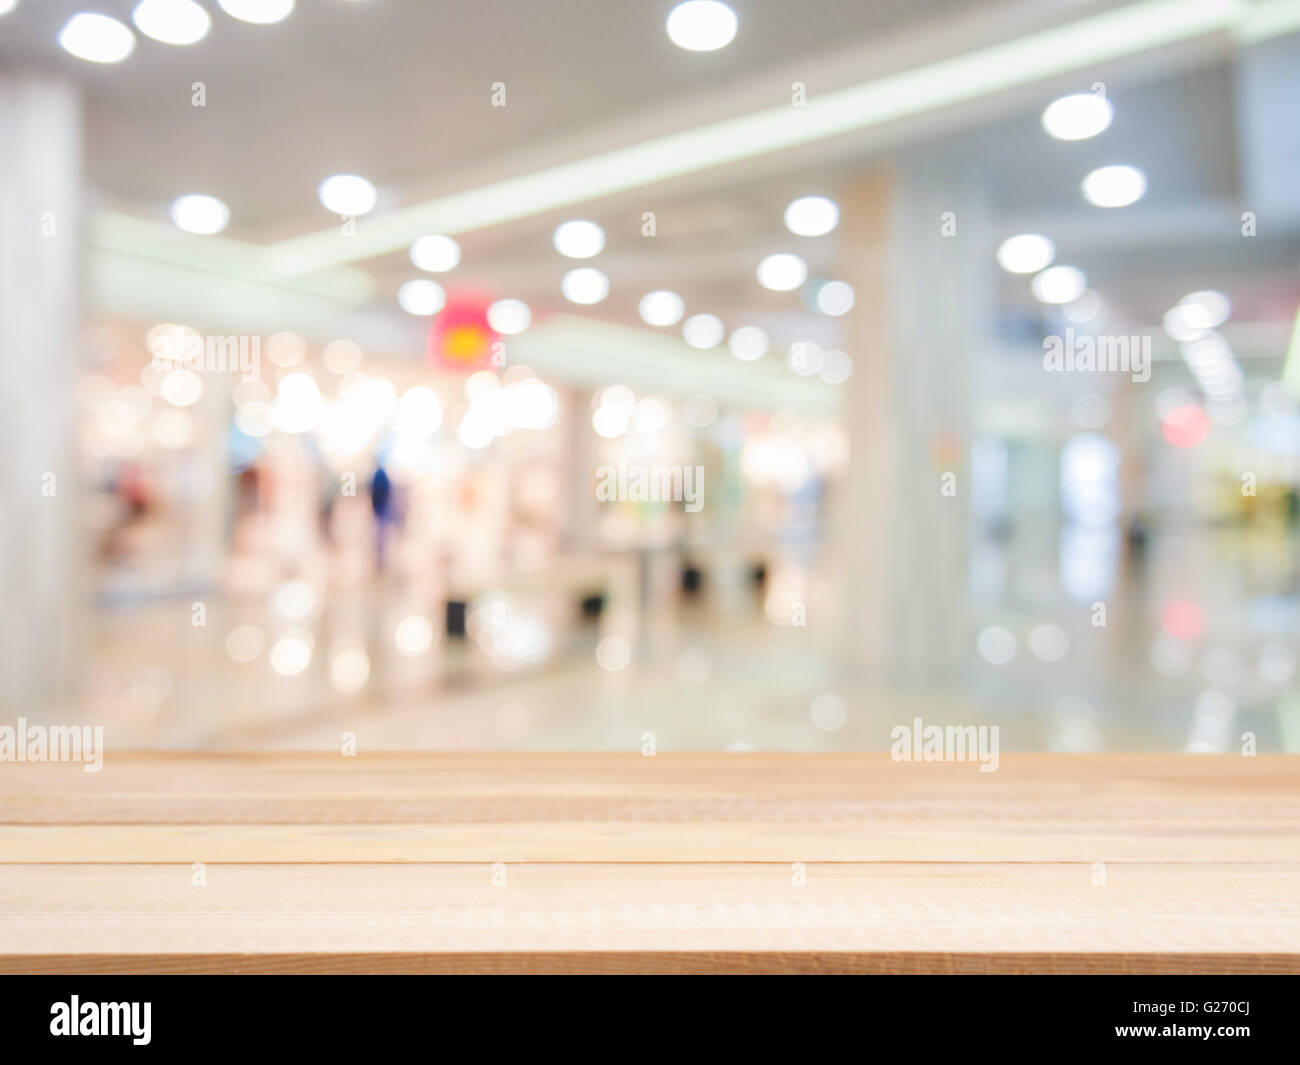 Tavola di legno tabella vuota nella parte anteriore del fondo sfocato. Prospettiva di legno chiaro su blur in shopping mall - può essere utilizzato per dis Foto Stock